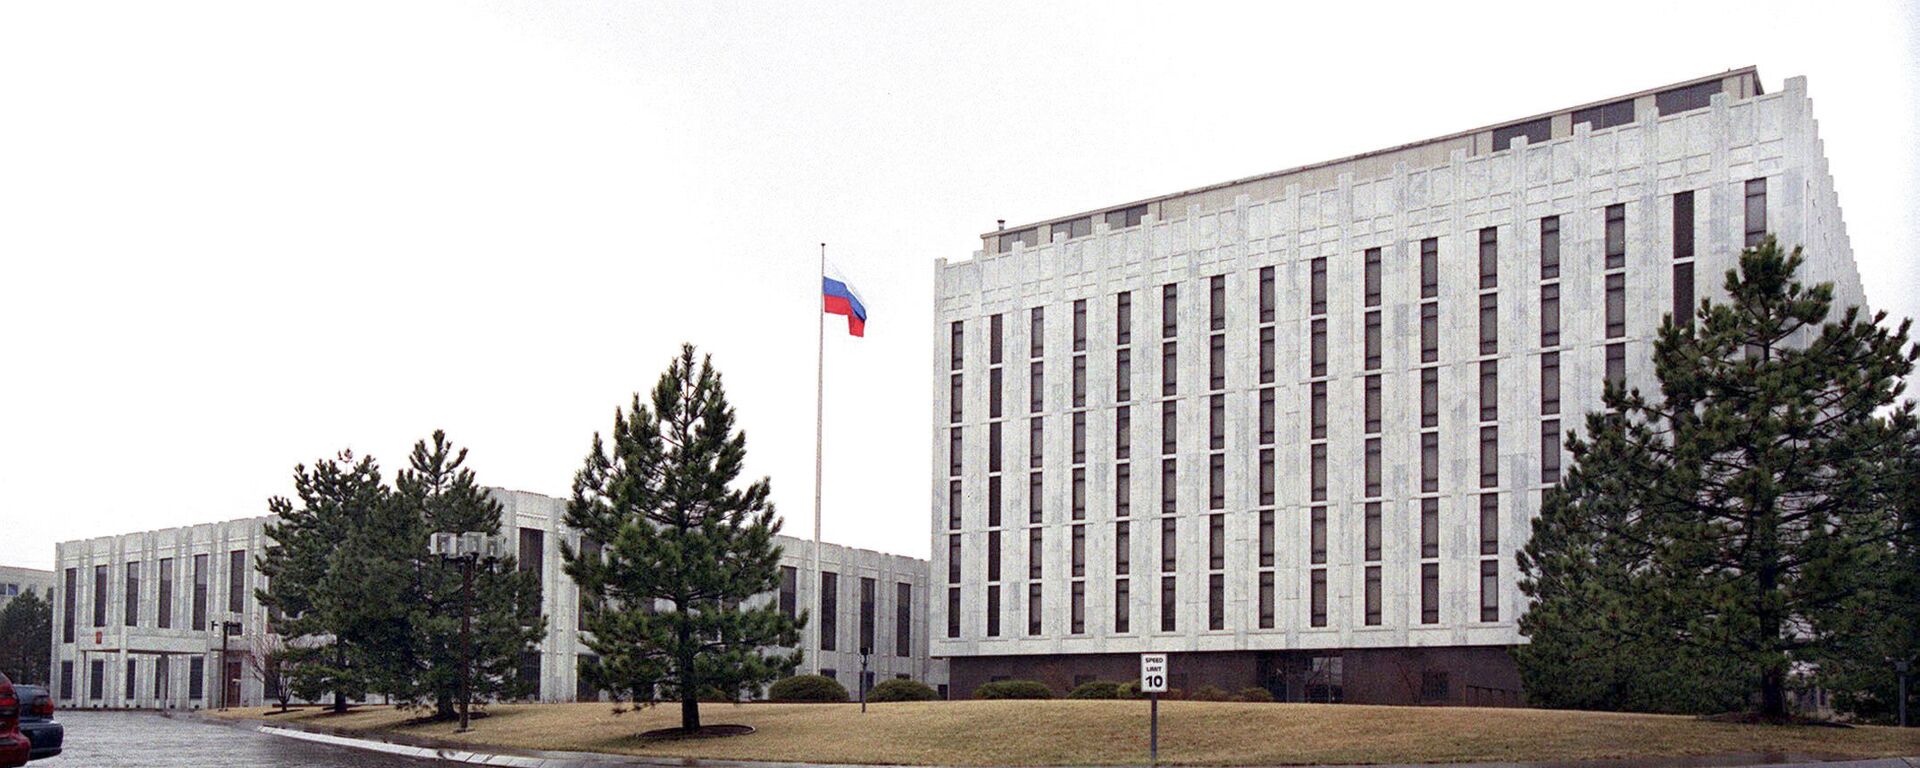 Здание Российского посольства в Вашингтоне - Sputnik Việt Nam, 1920, 02.07.2021